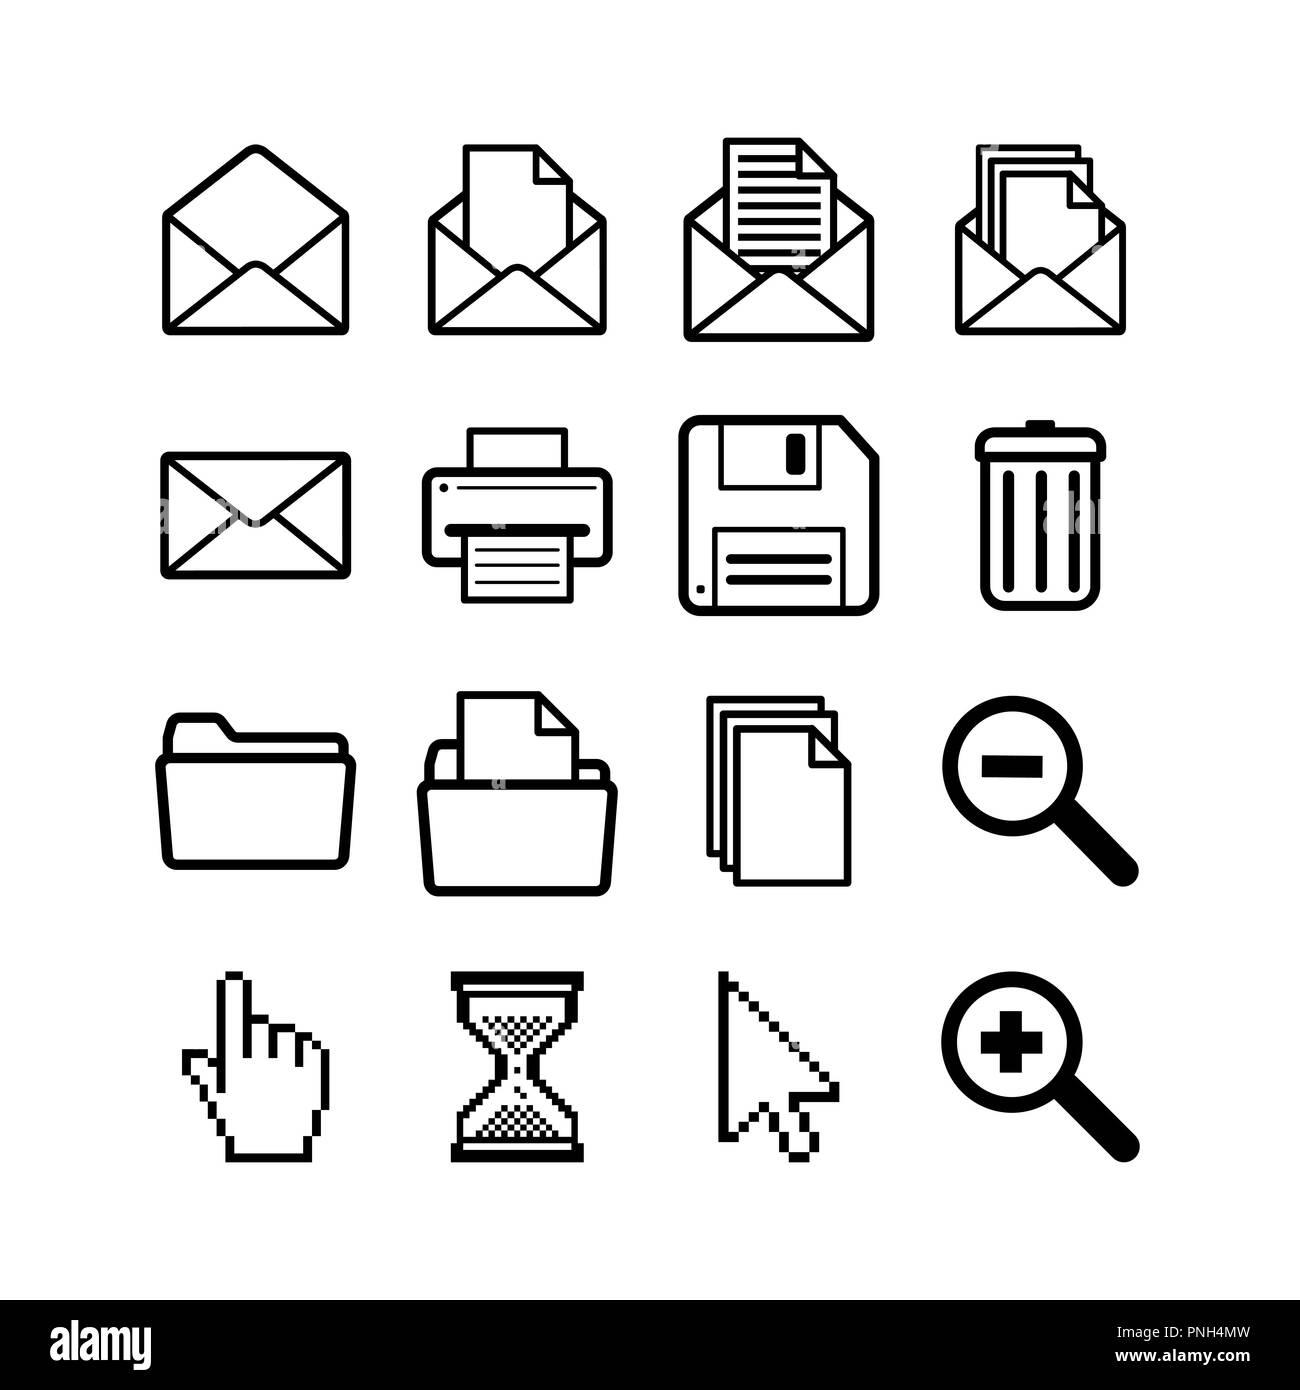 Allgemeine Benutzeroberfläche Piktogramme für gemeinsame Operationen wie Öffnen, Speichern, Drucken und Löschen, einfache schwarze Symbole auf Weiß Stock Vektor